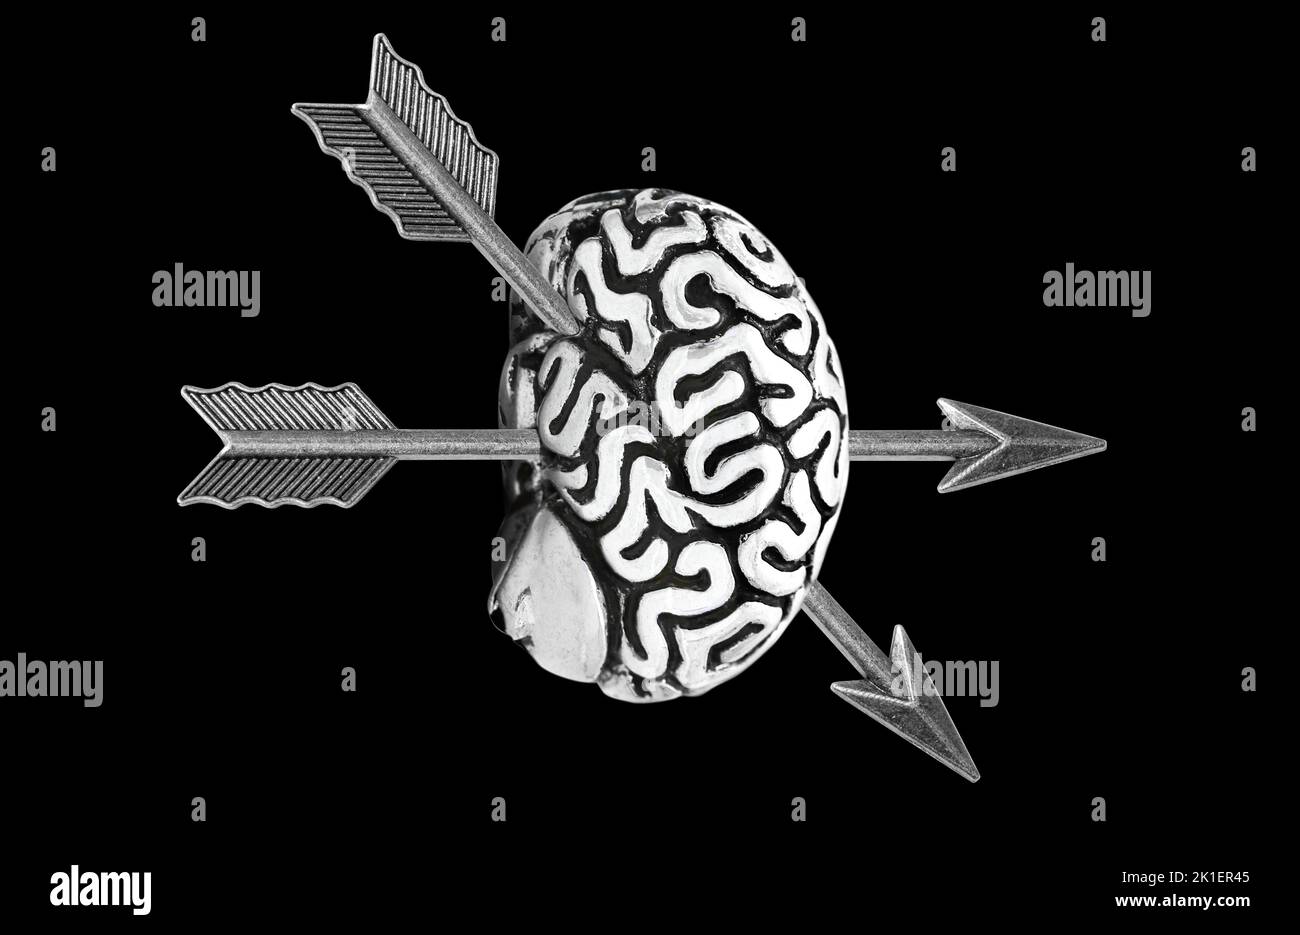 Copia anatomica di un cervello umano trafitto con due frecce ad arco isolate su sfondo nero. Foto Stock